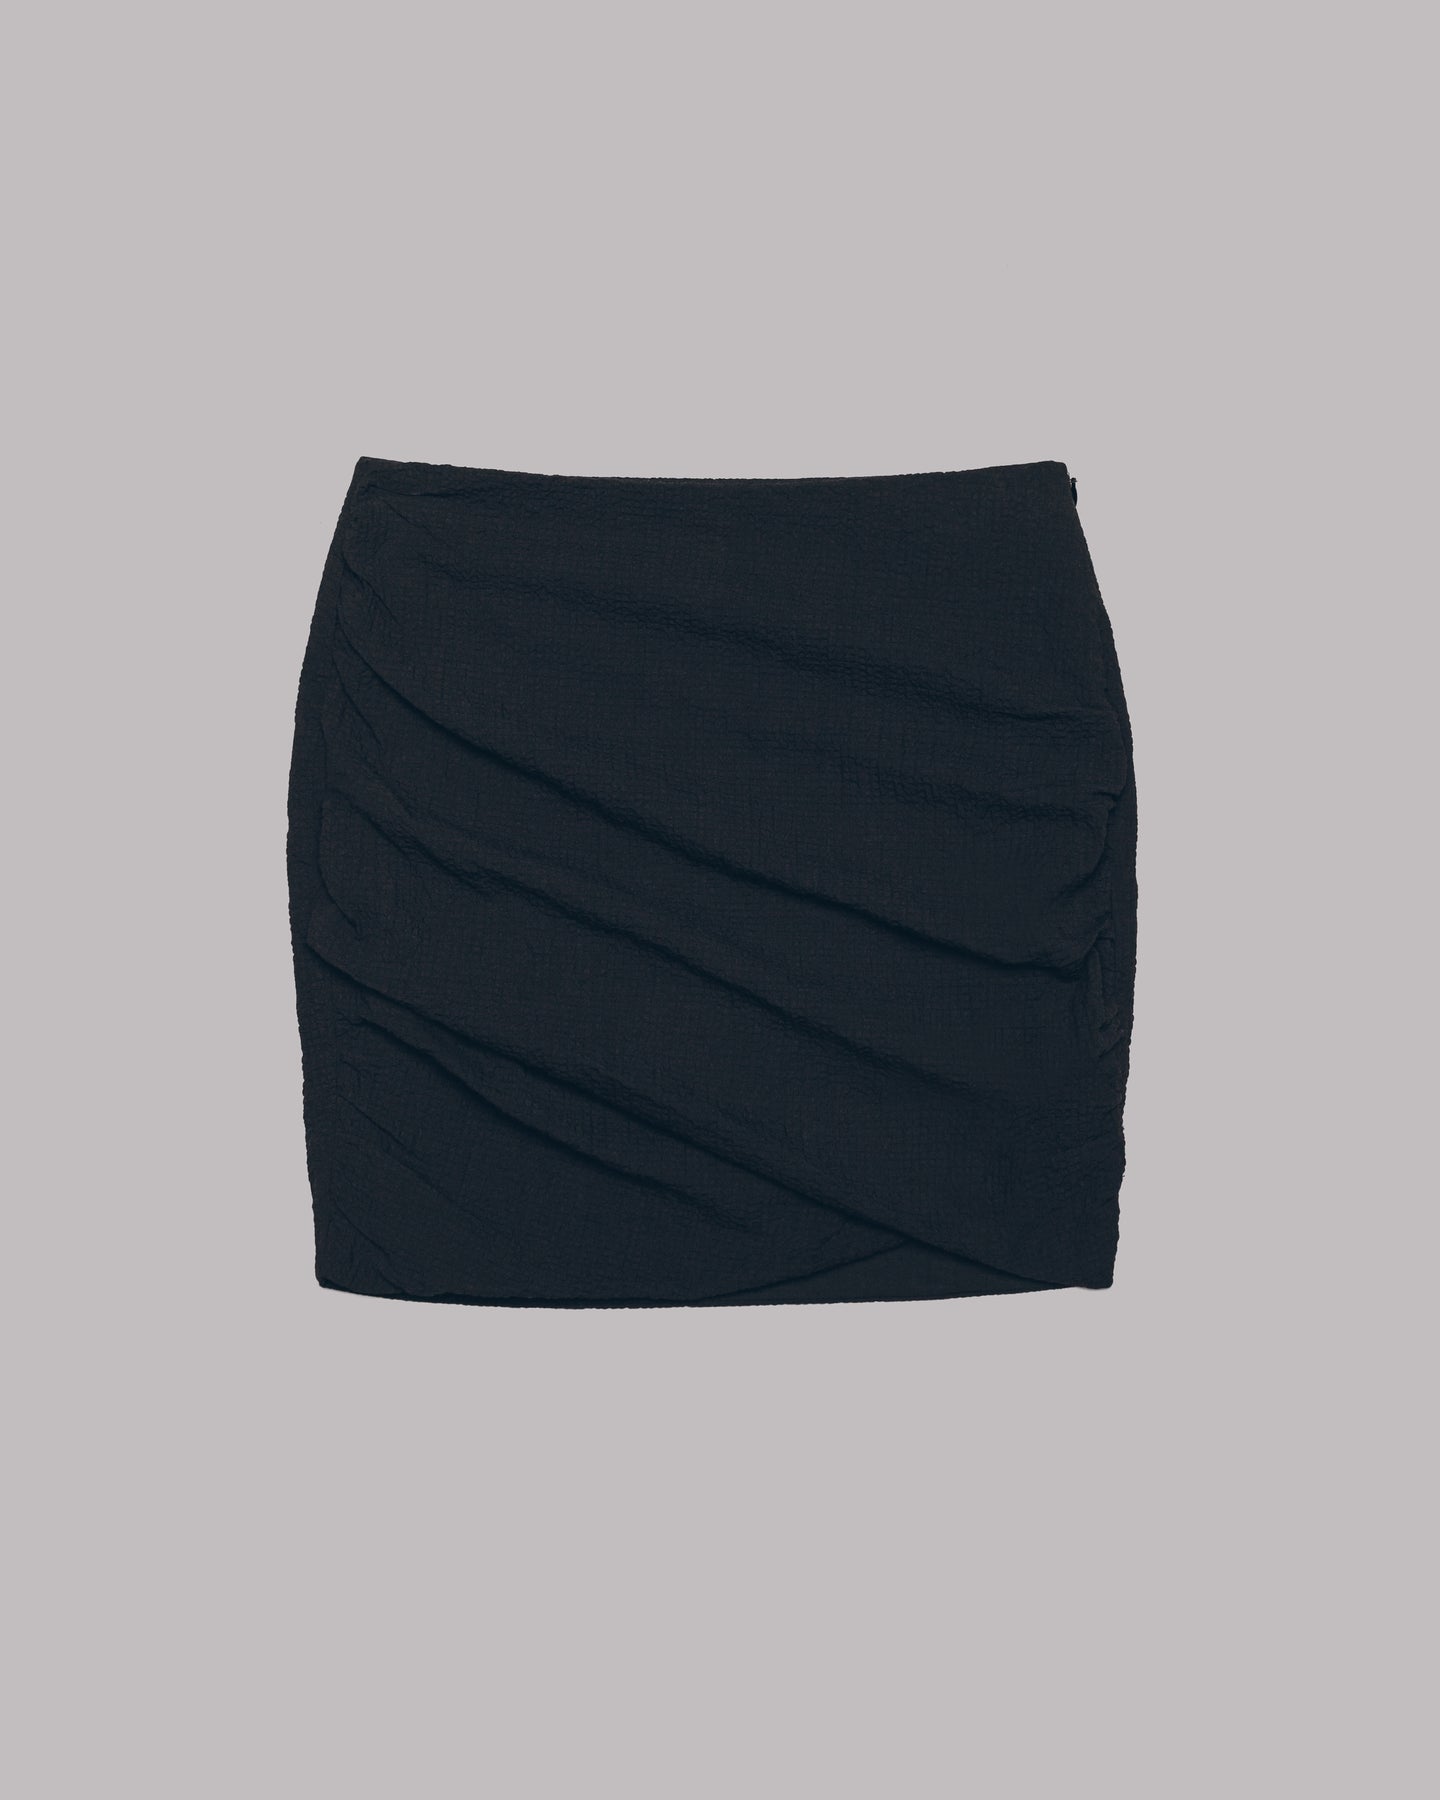 The Black Draped Skirt – MIKUTA